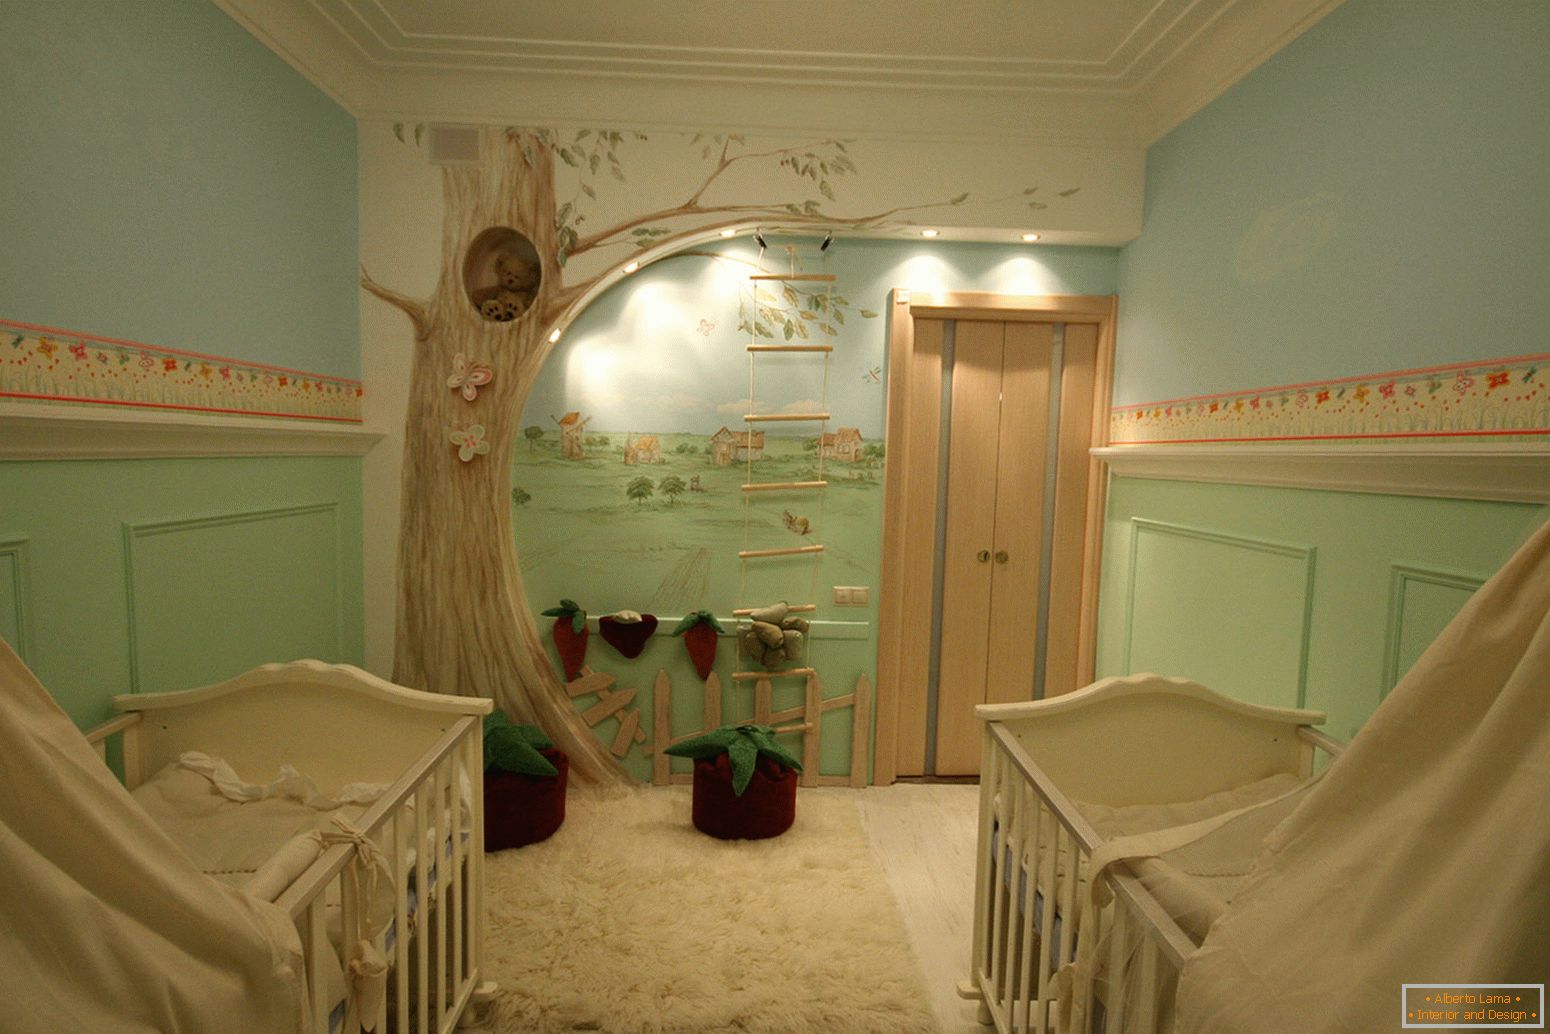 Dizajniranje dečije sobe za dvoje djece